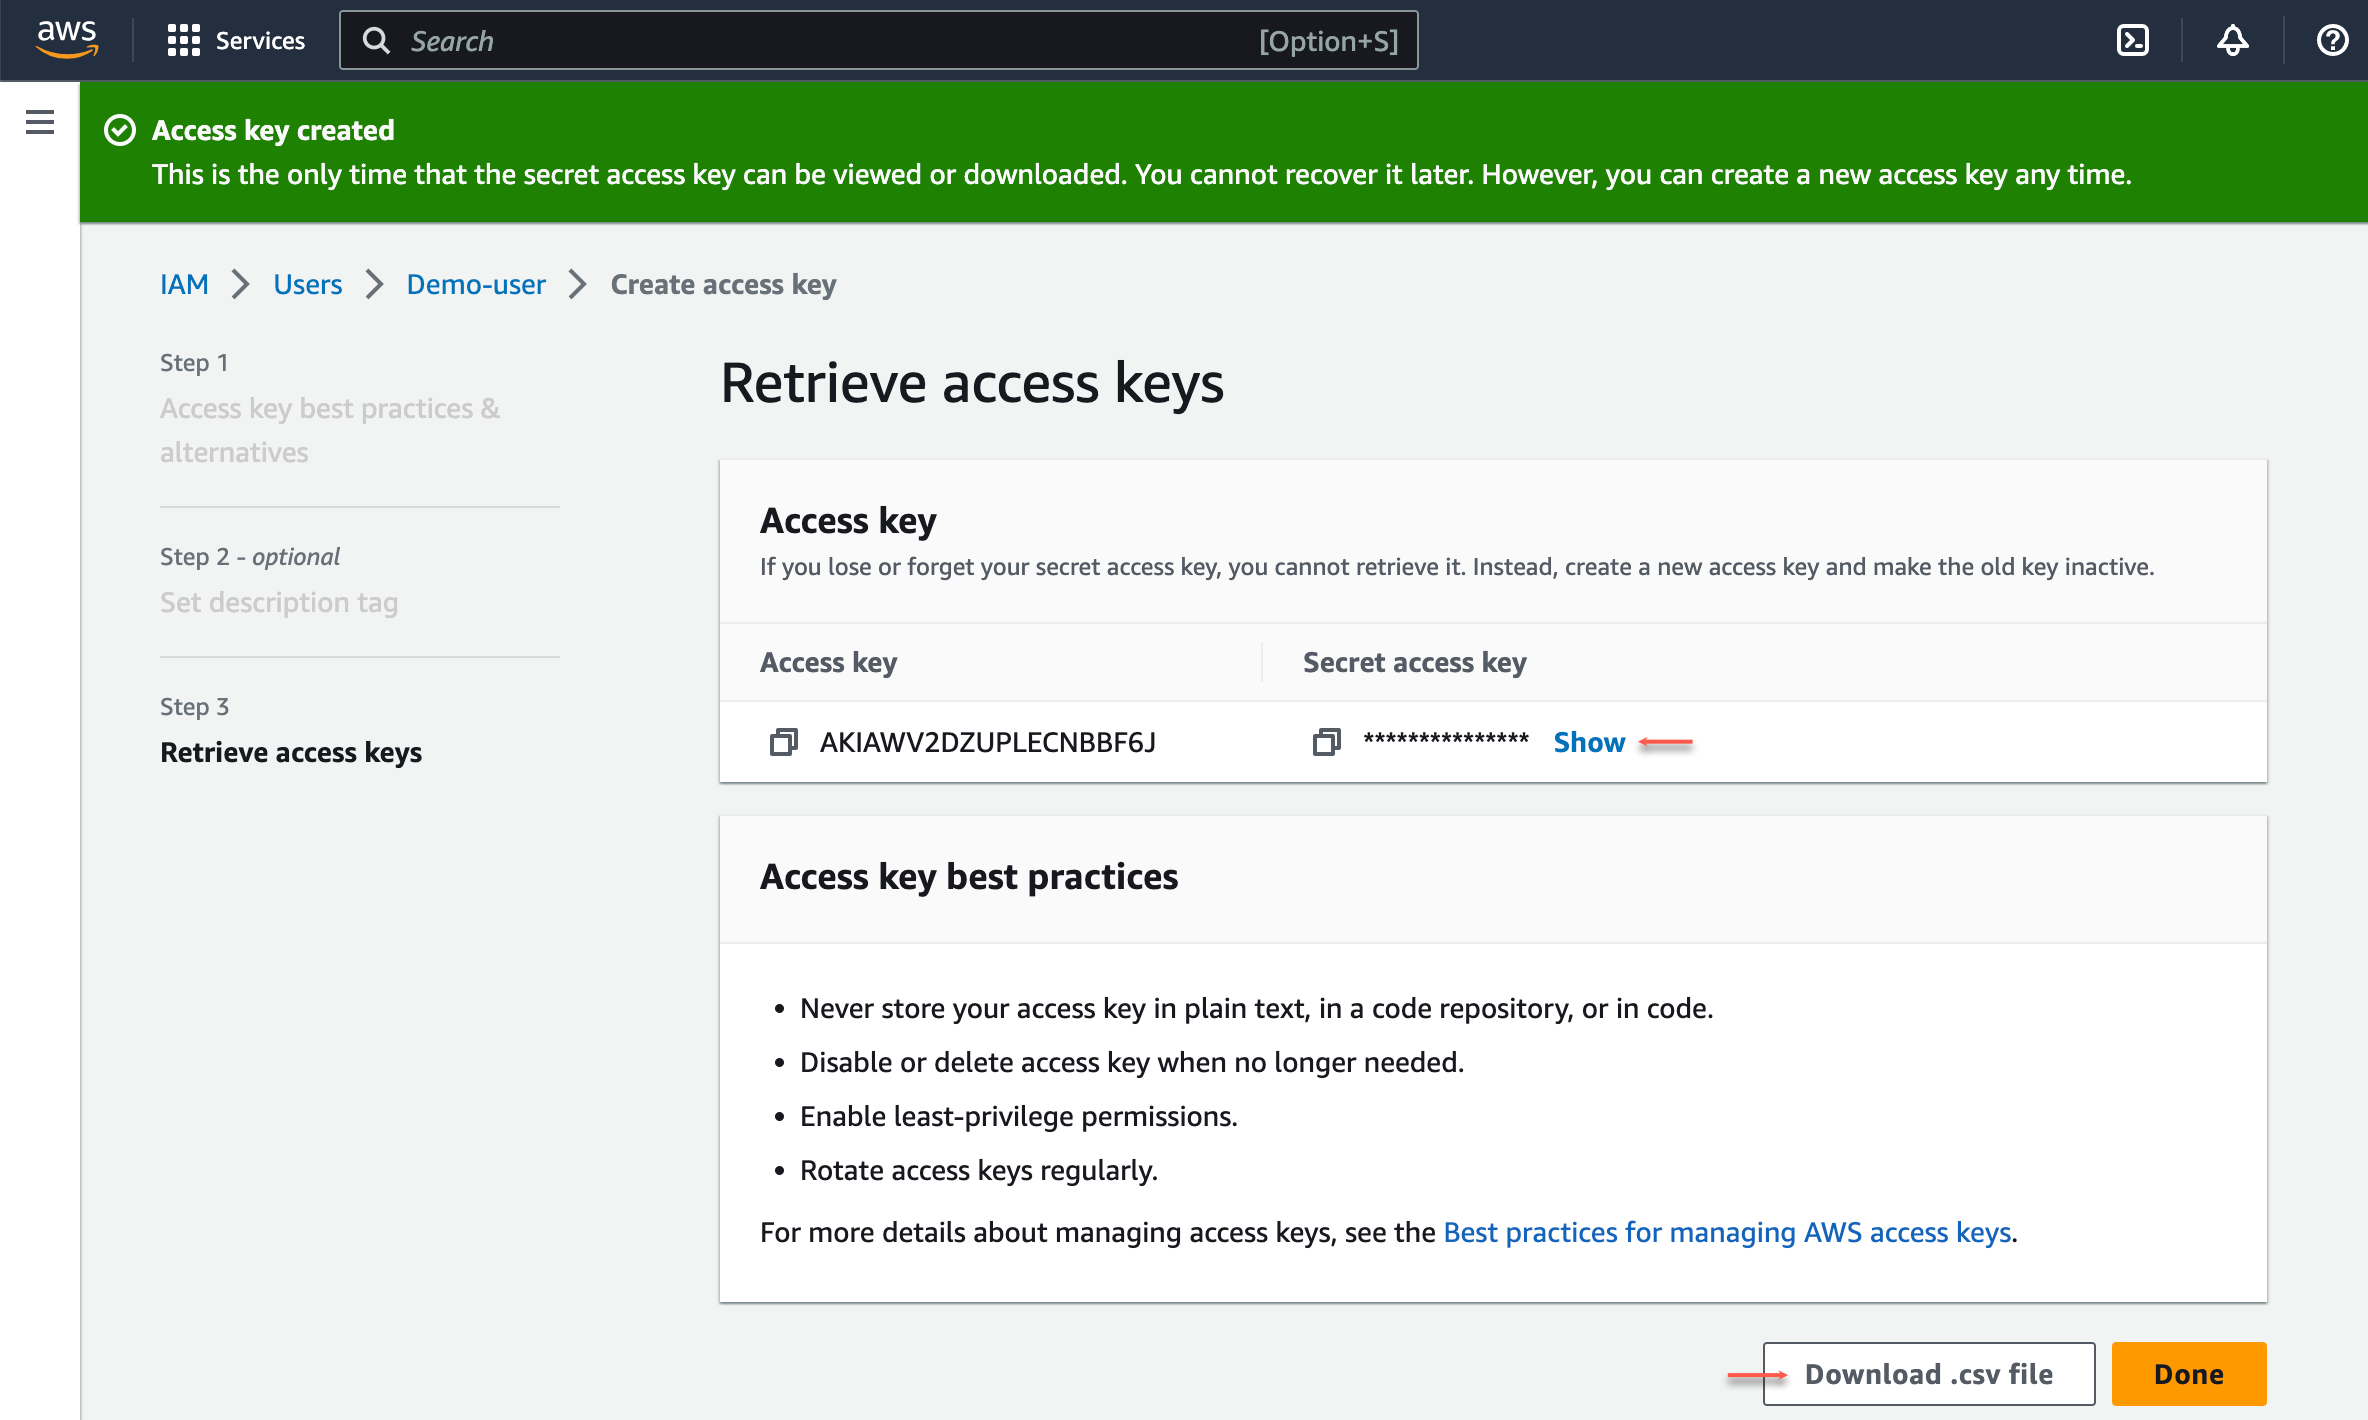 Create new access key - success